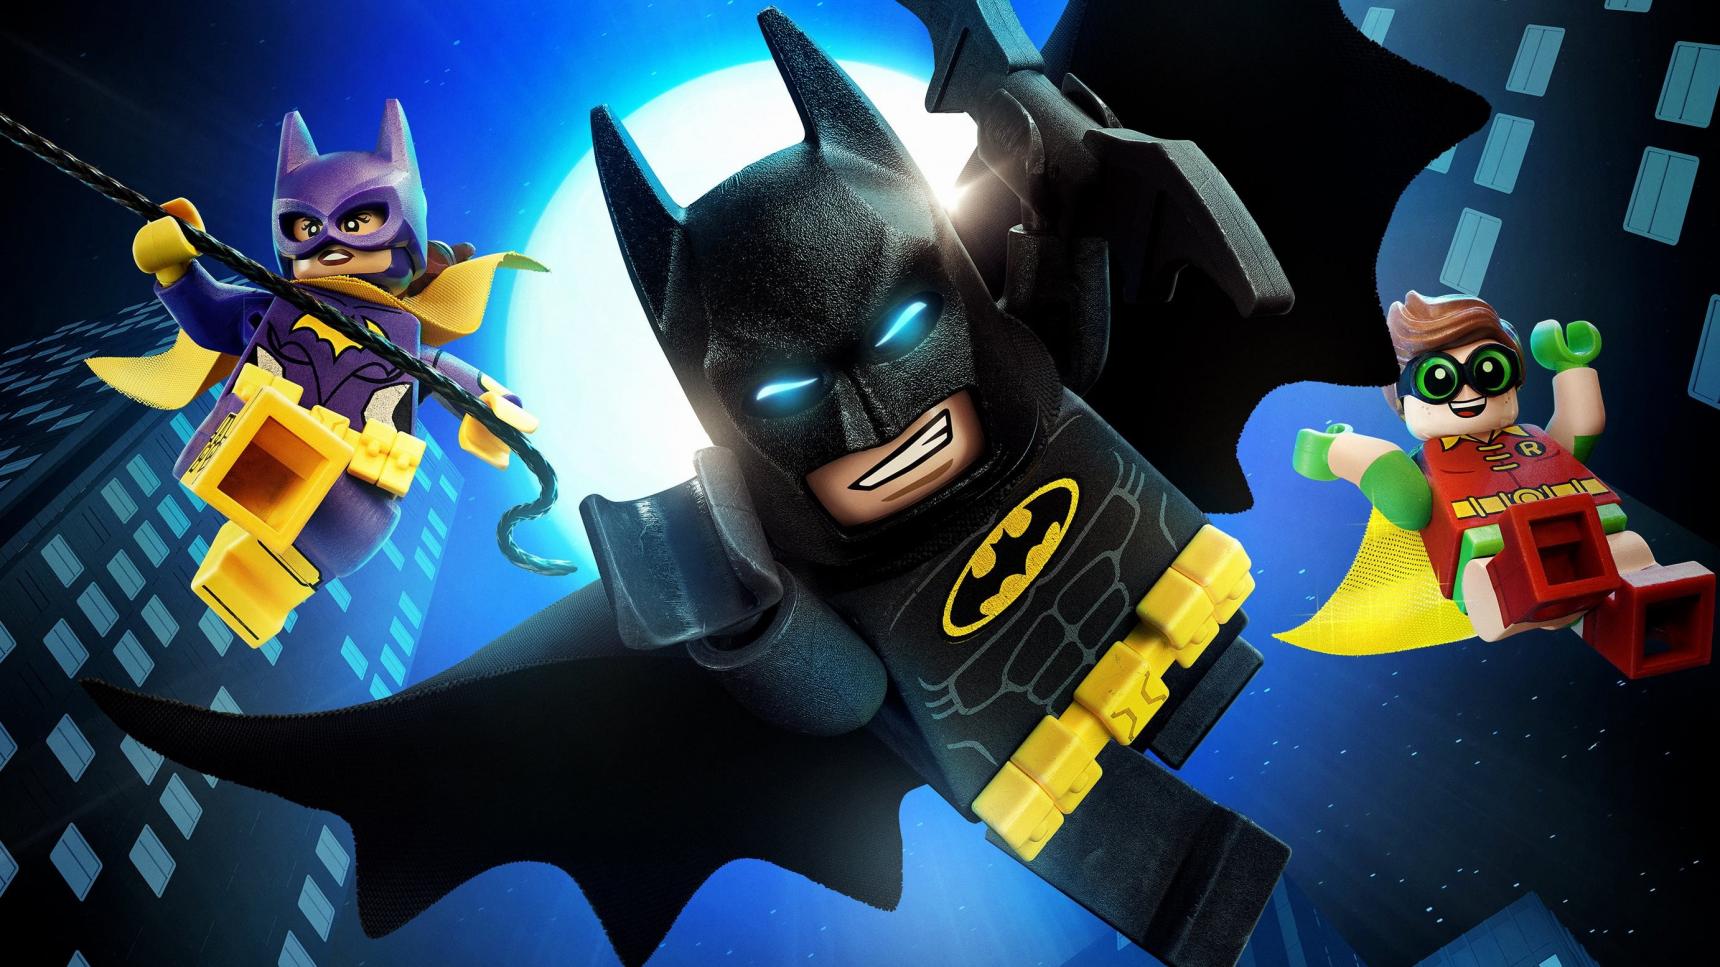 Ver Batman: La LEGO película Online Gratis (⚜️ 2017) | Cuevana 3